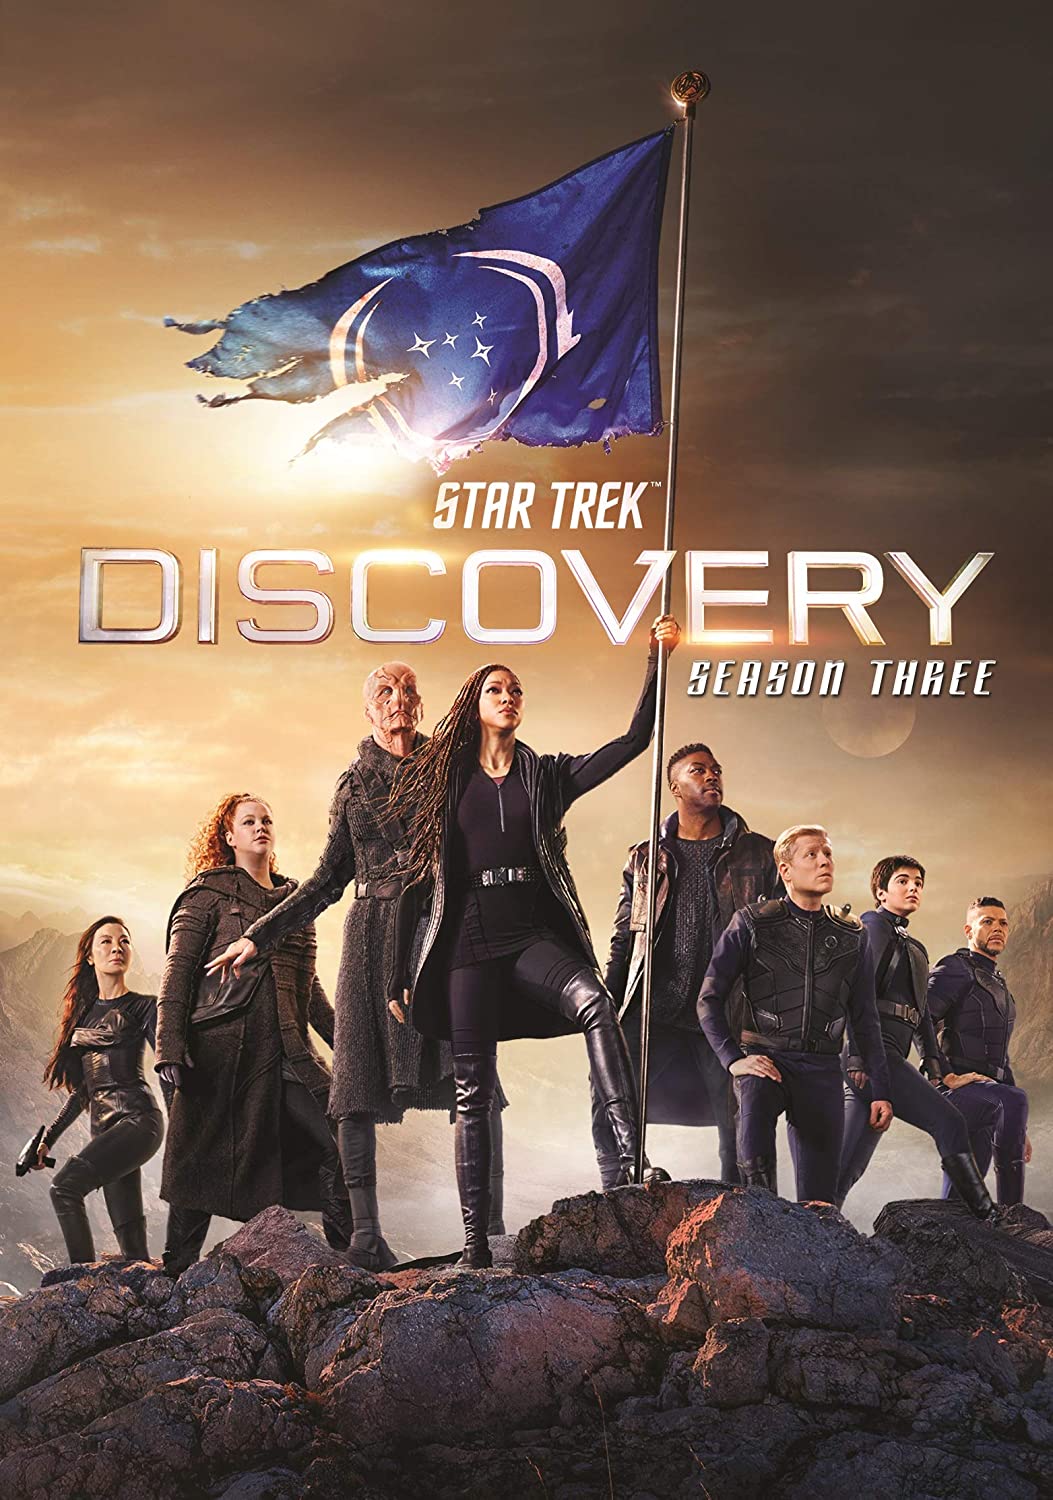 ดูหนังออนไลน์ Star Trek Discovery Season 3 EP13 สตาร์ เทรค ดิสคัฟเวอรี่ ซีซั่นที่ 3 ตอนที่ 13